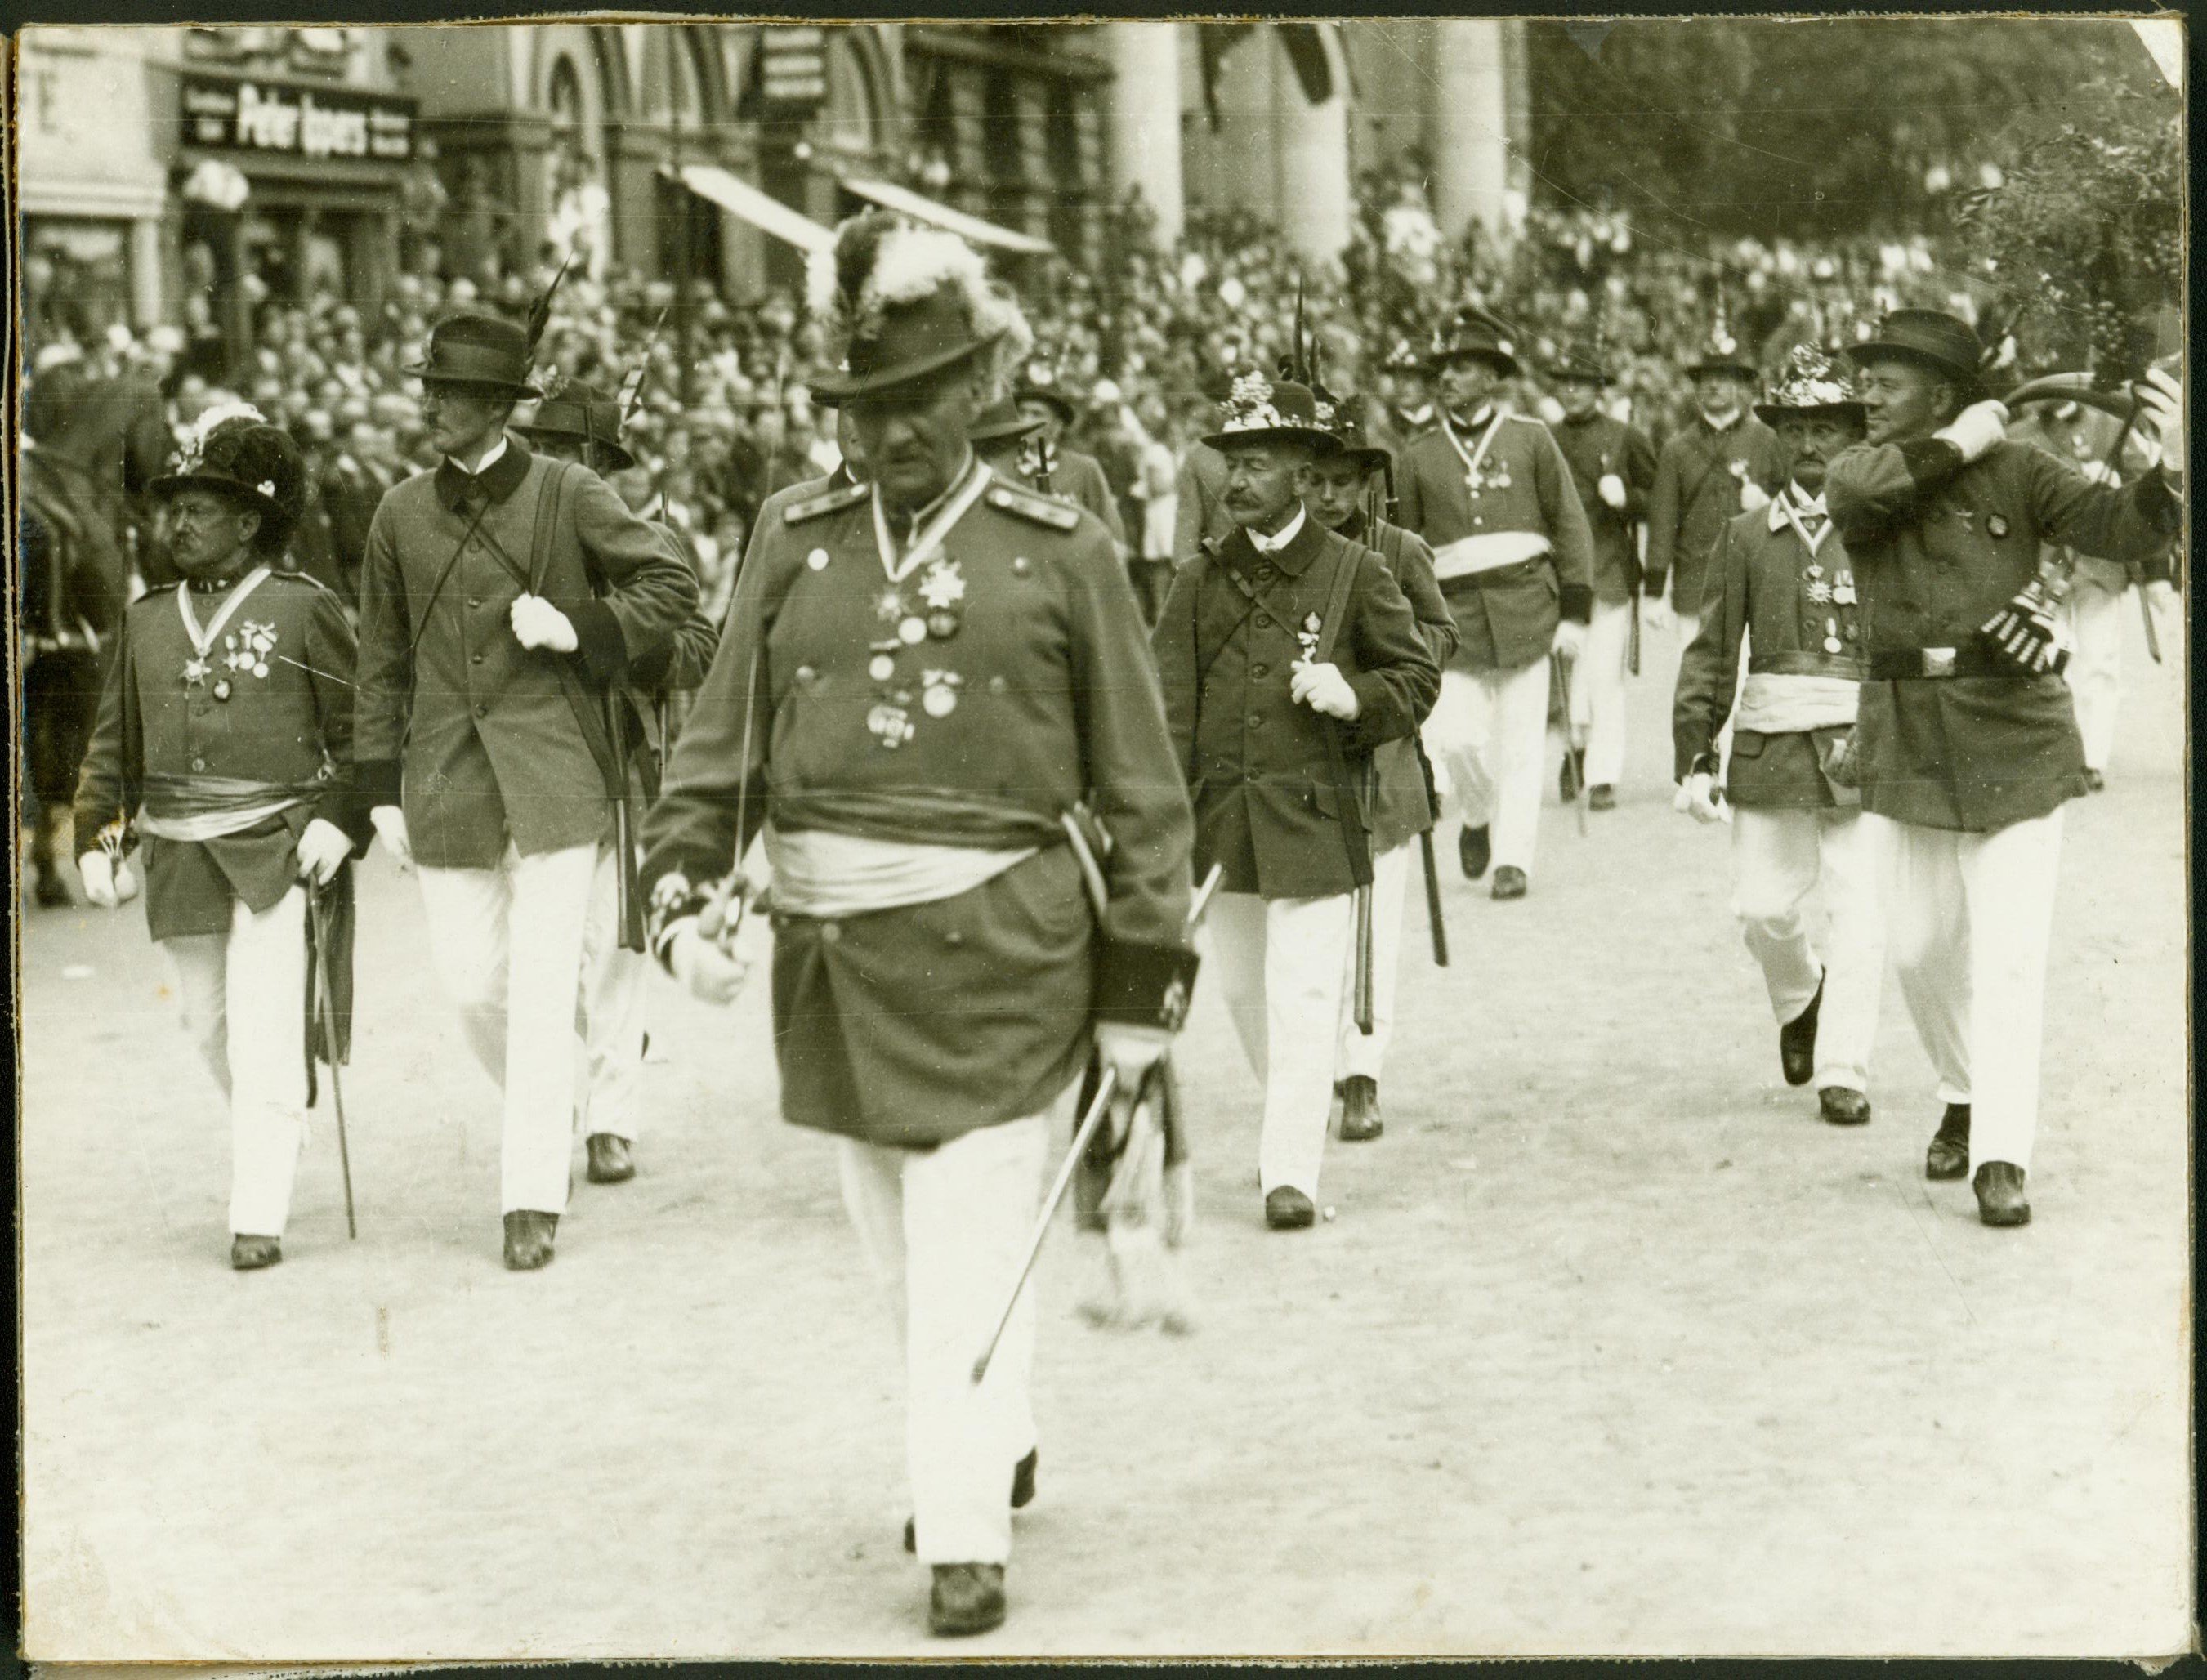 Neusser Schützenlust, Parade, um 1920 (Rheinisches Schützenmuseum Neuss CC BY-NC-SA)